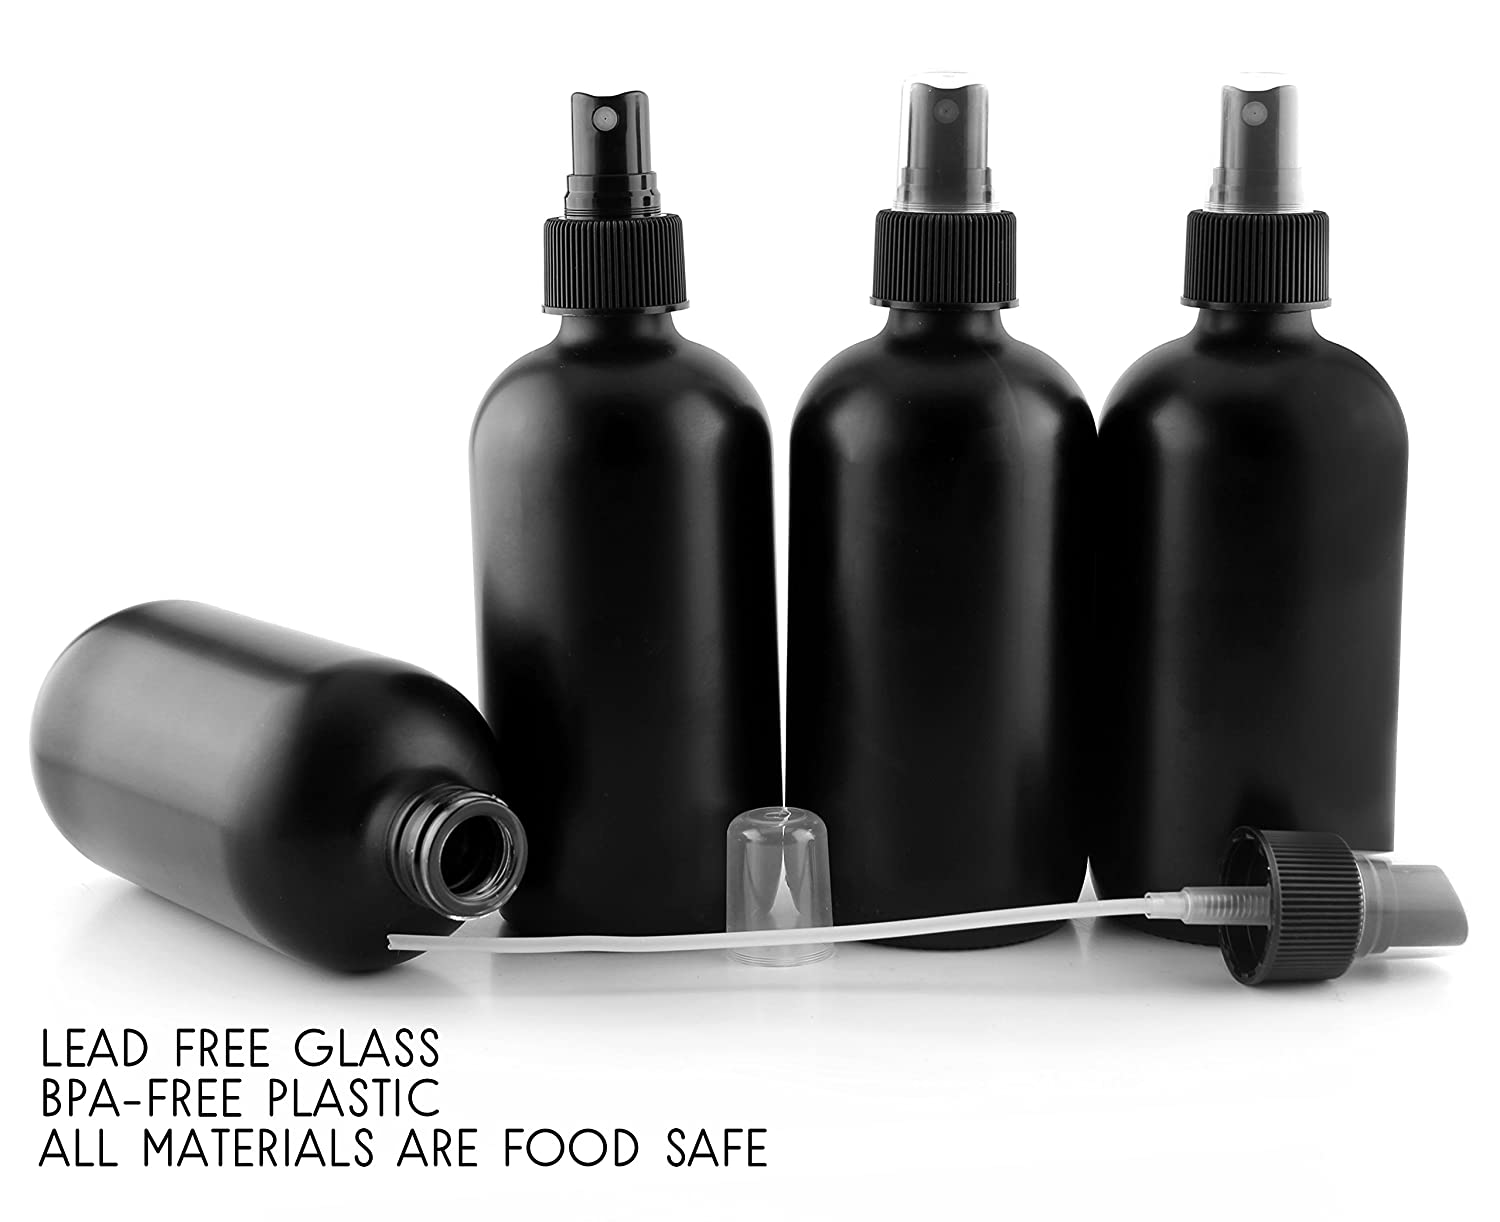 8oz Black Glass Spray Bottles or Perfume Bottles (4-Pack) - sh1423cb0rlh